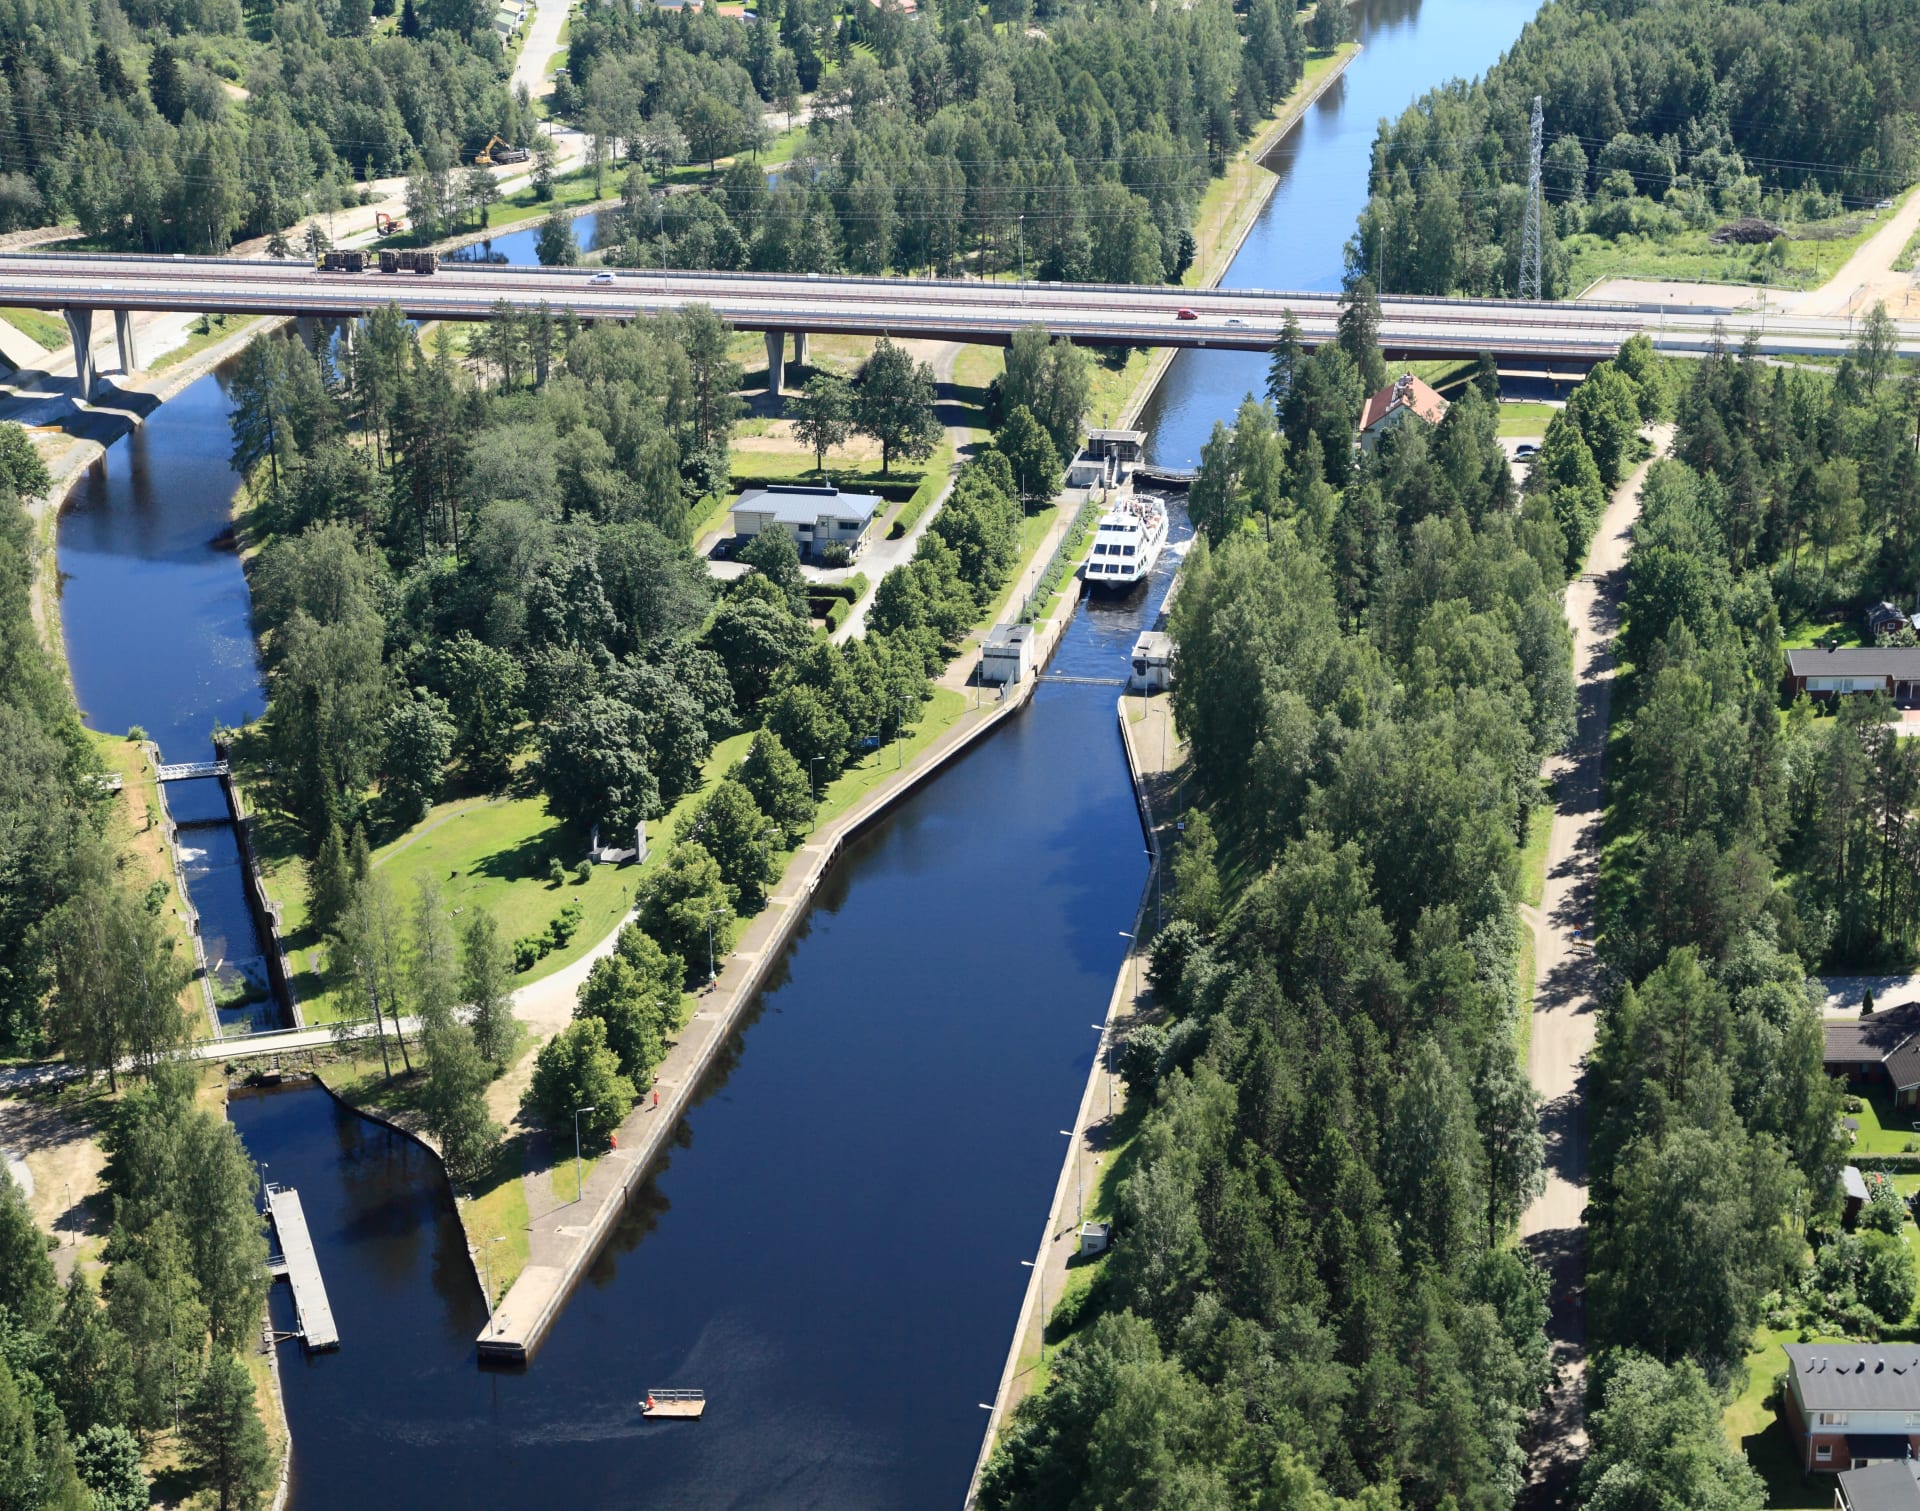 The Saimaa Canal